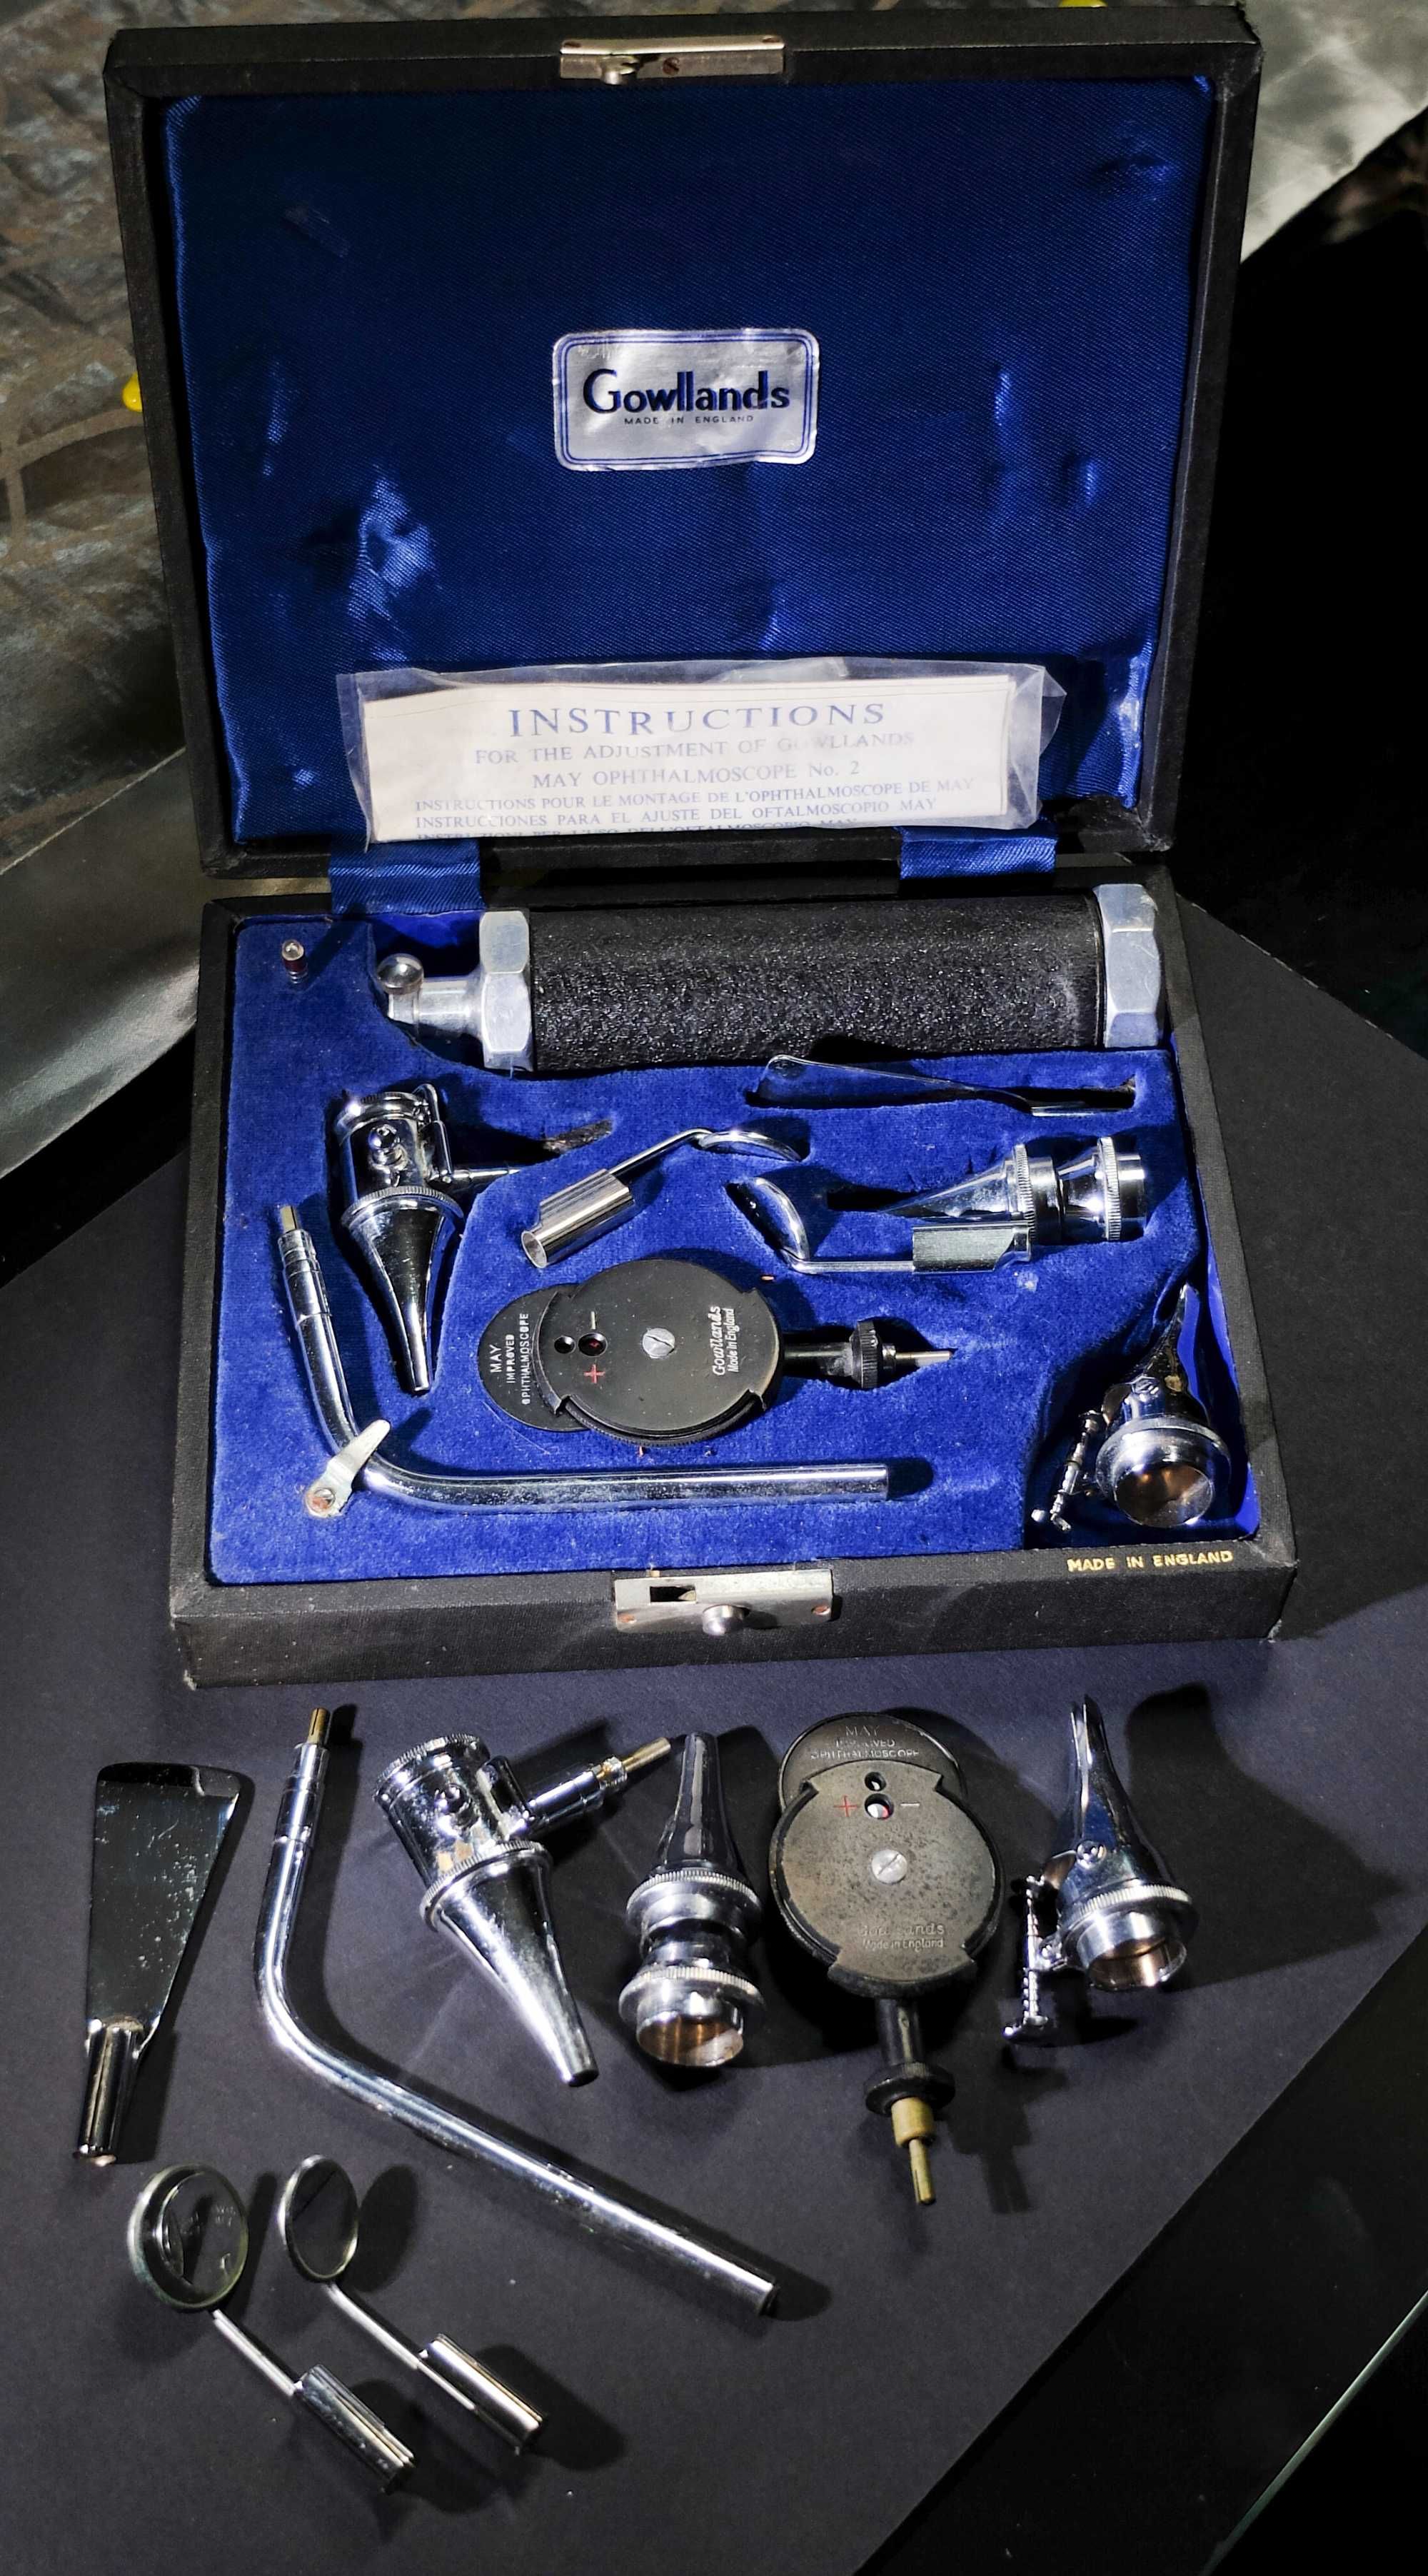 Oftalmoscópio de otoscópio Gowllands - colecção vintage